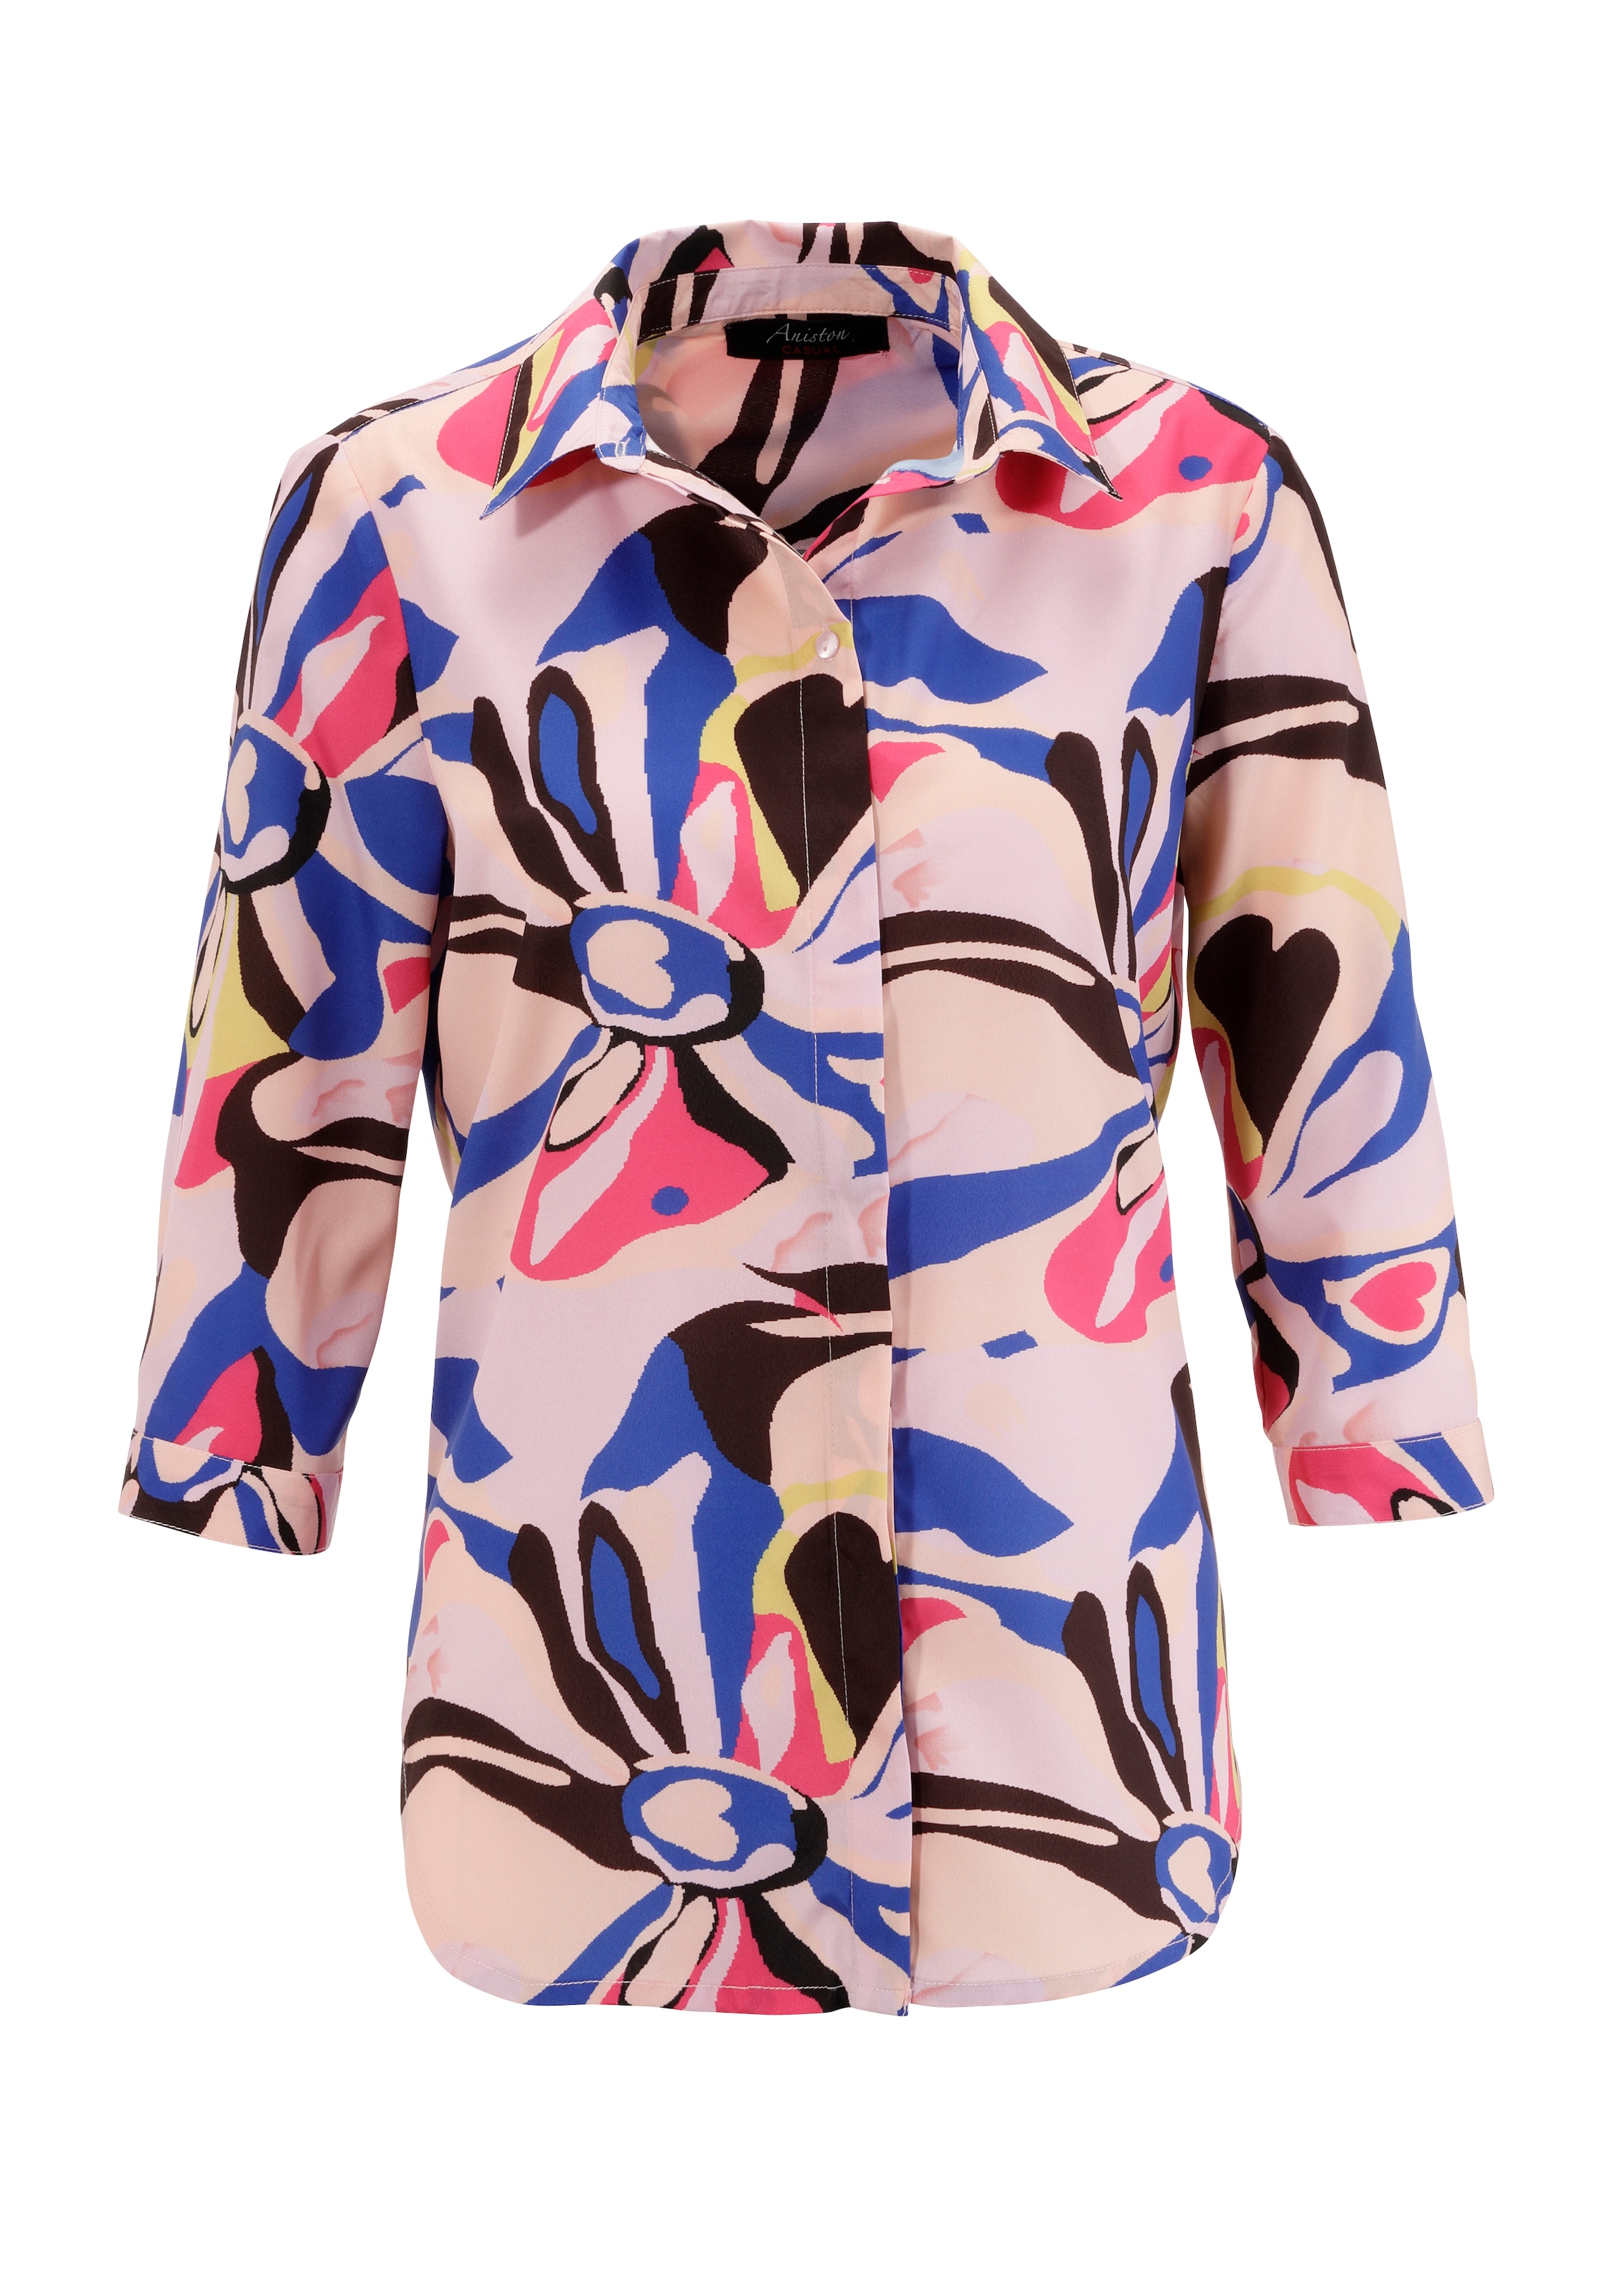 KOLLEKTION mit Hemdbluse, bestellen graphischem Druck farbenfrohem, NEUE - CASUAL Aniston